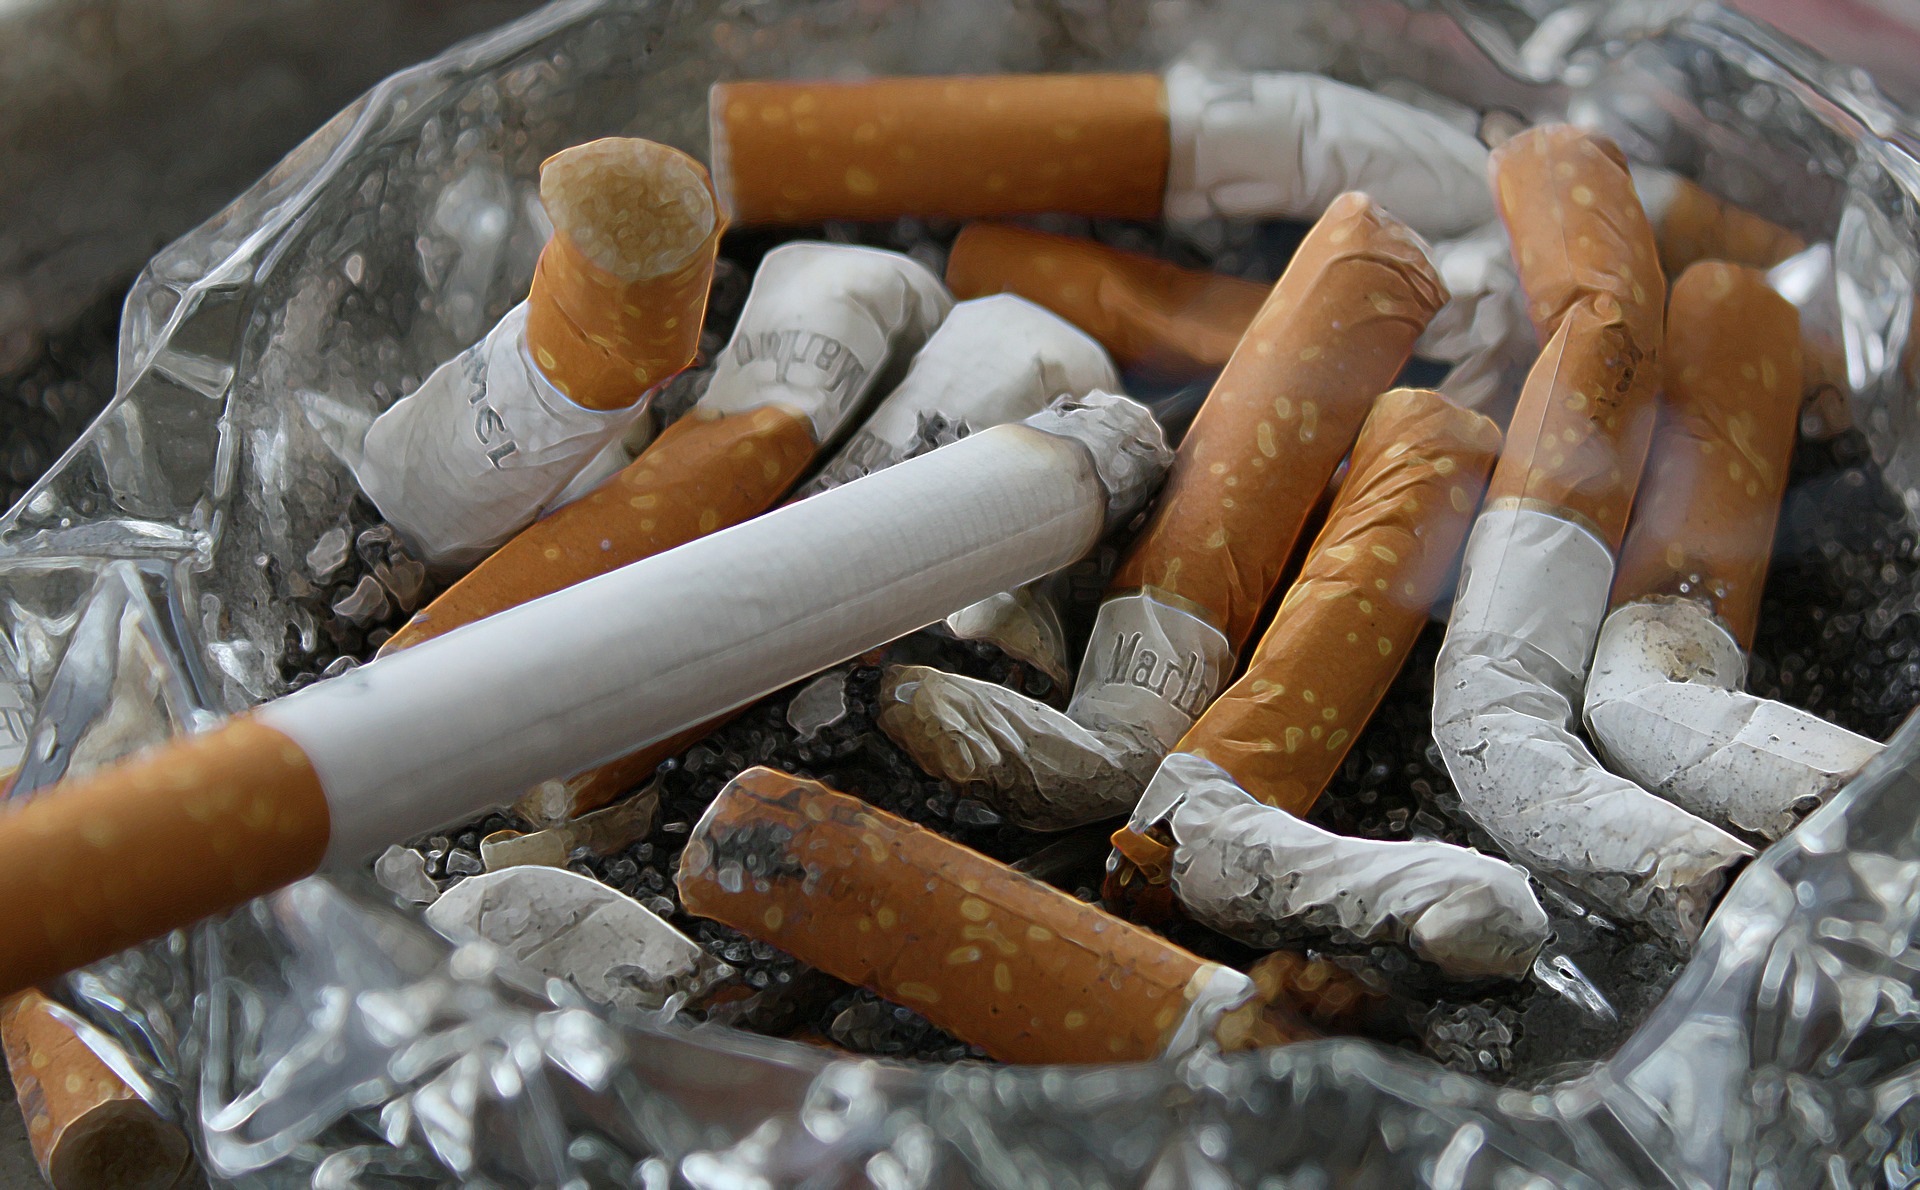 Mozziconi di sigarette, https://pixabay.com/p-83571/?no_redirect